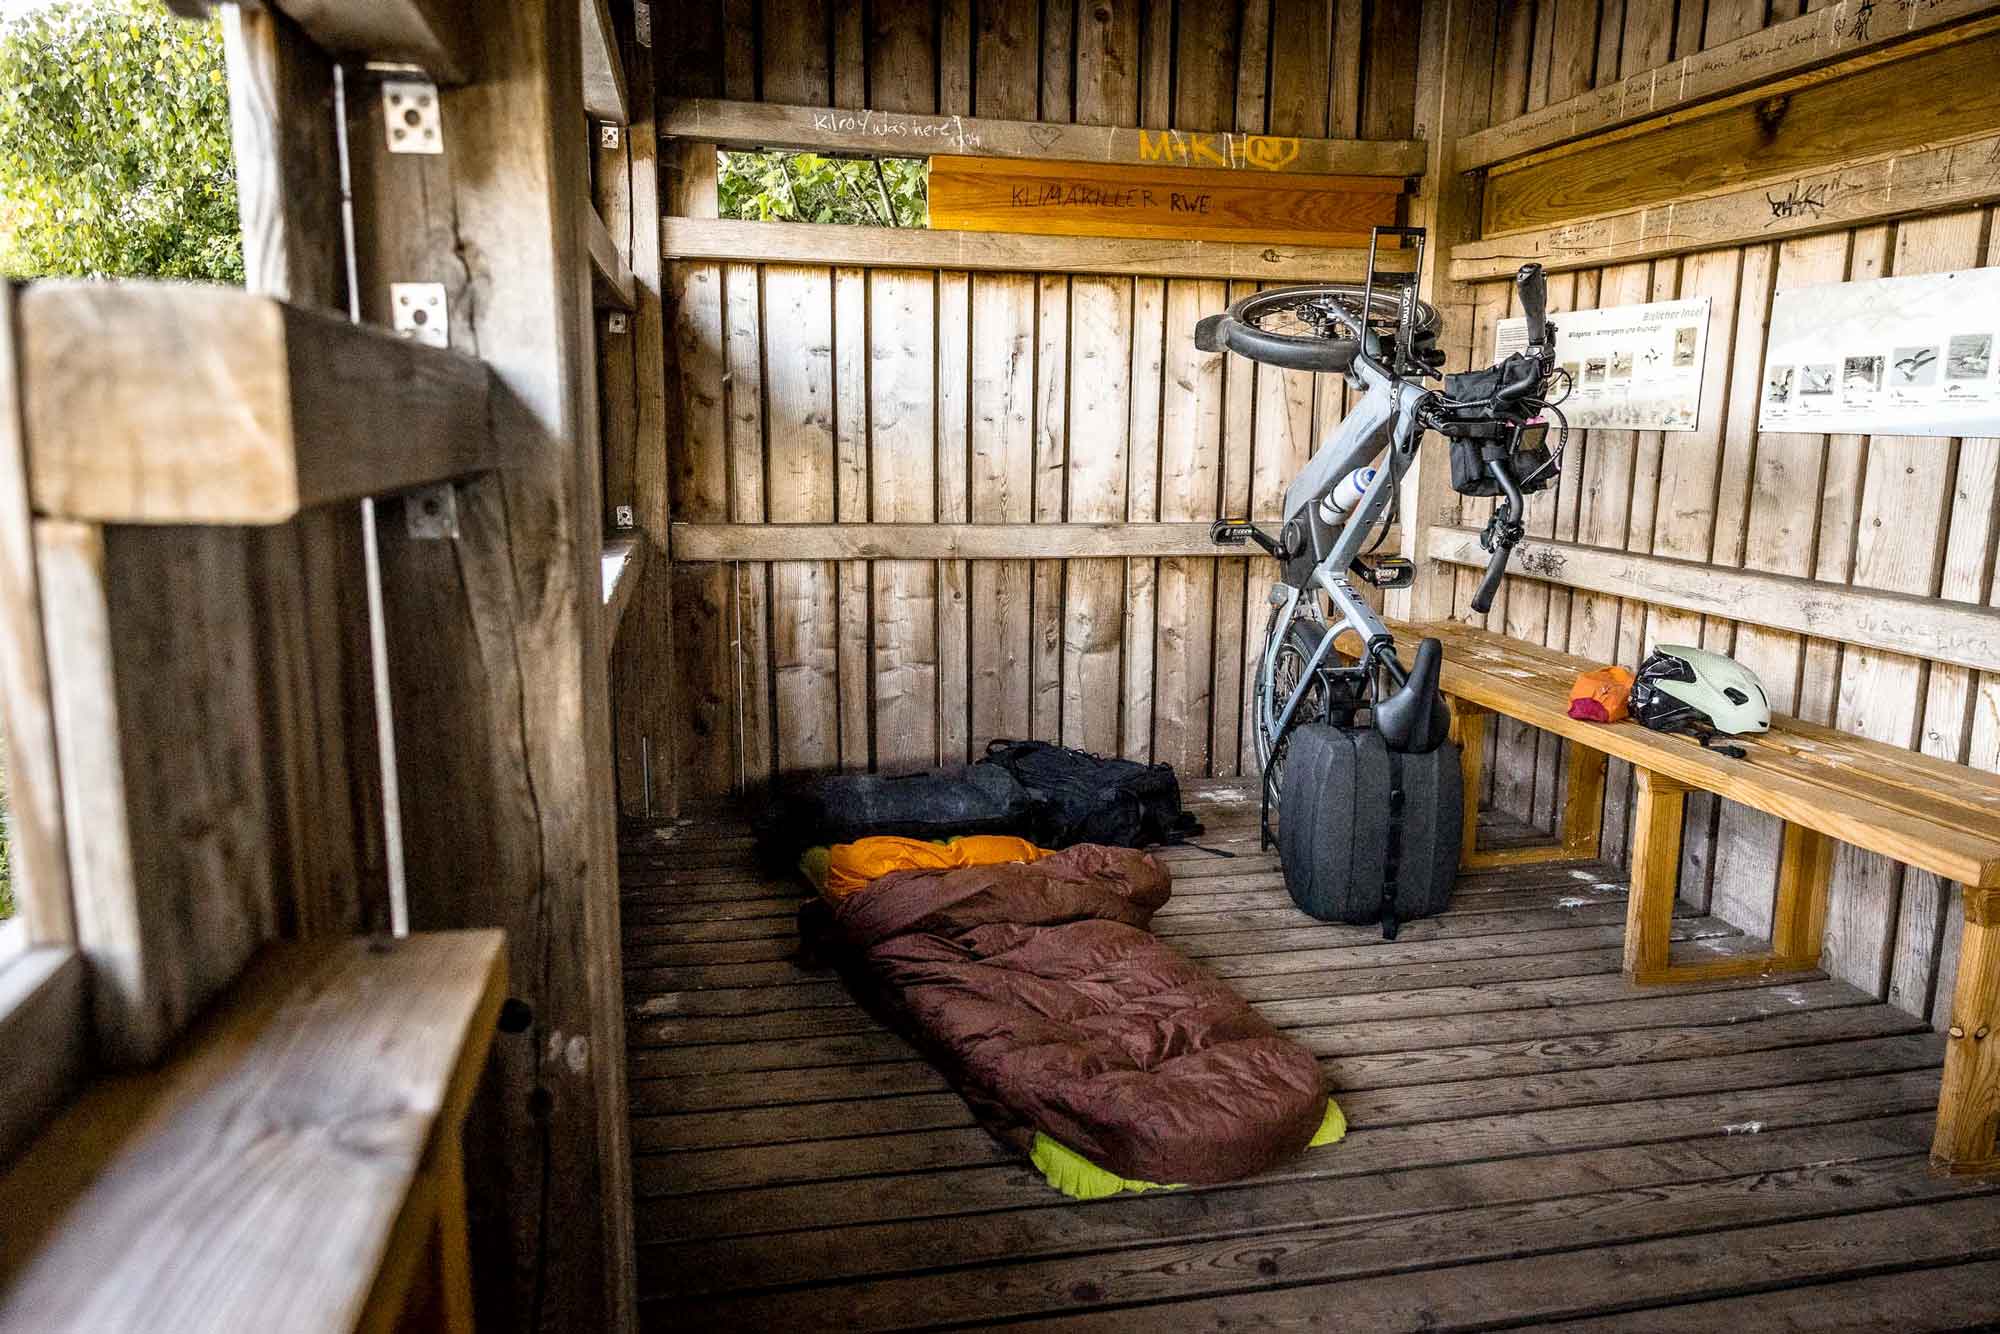 Ordnung in der schutzhütte: wie gut, wenn man das bike aufrecht lagern kann!